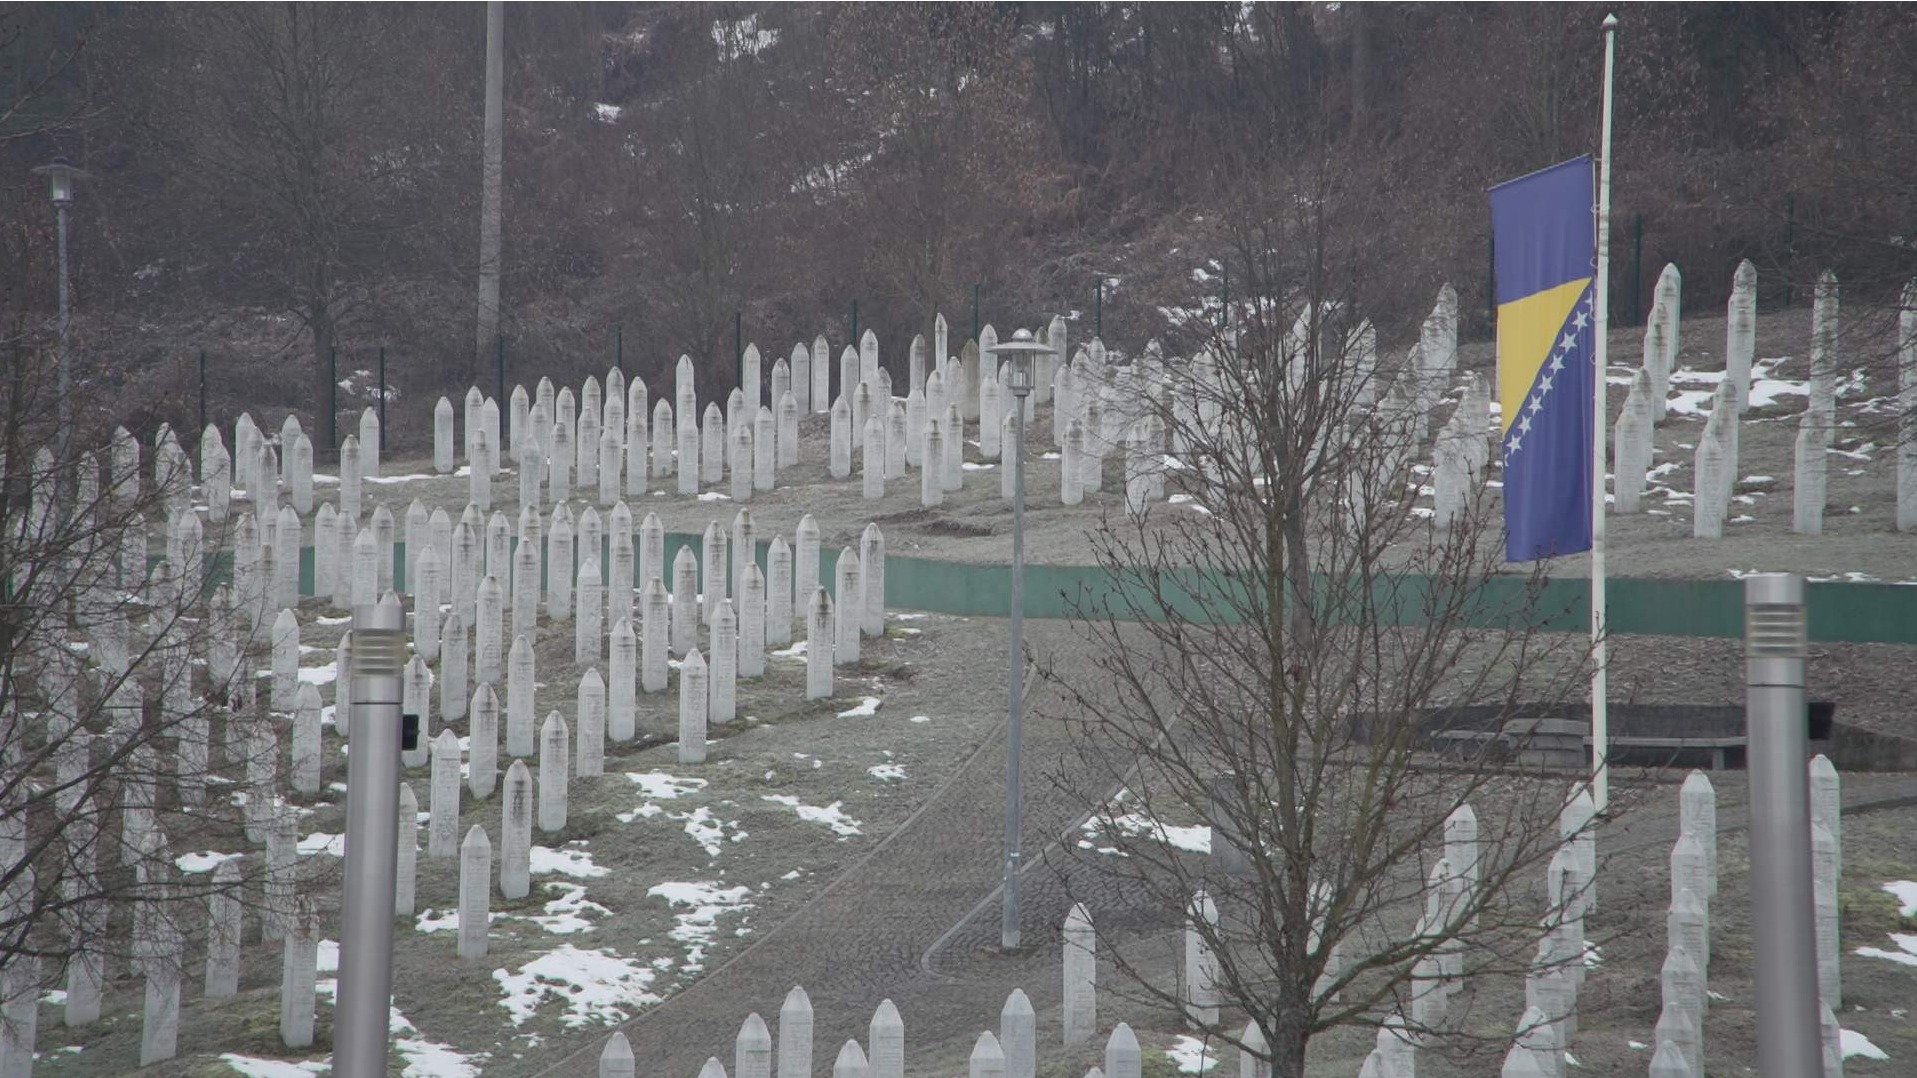 Naši šehidi u Potočarima su glavni stub odbrane Bosne i Hercegovine i oni su naša snaga